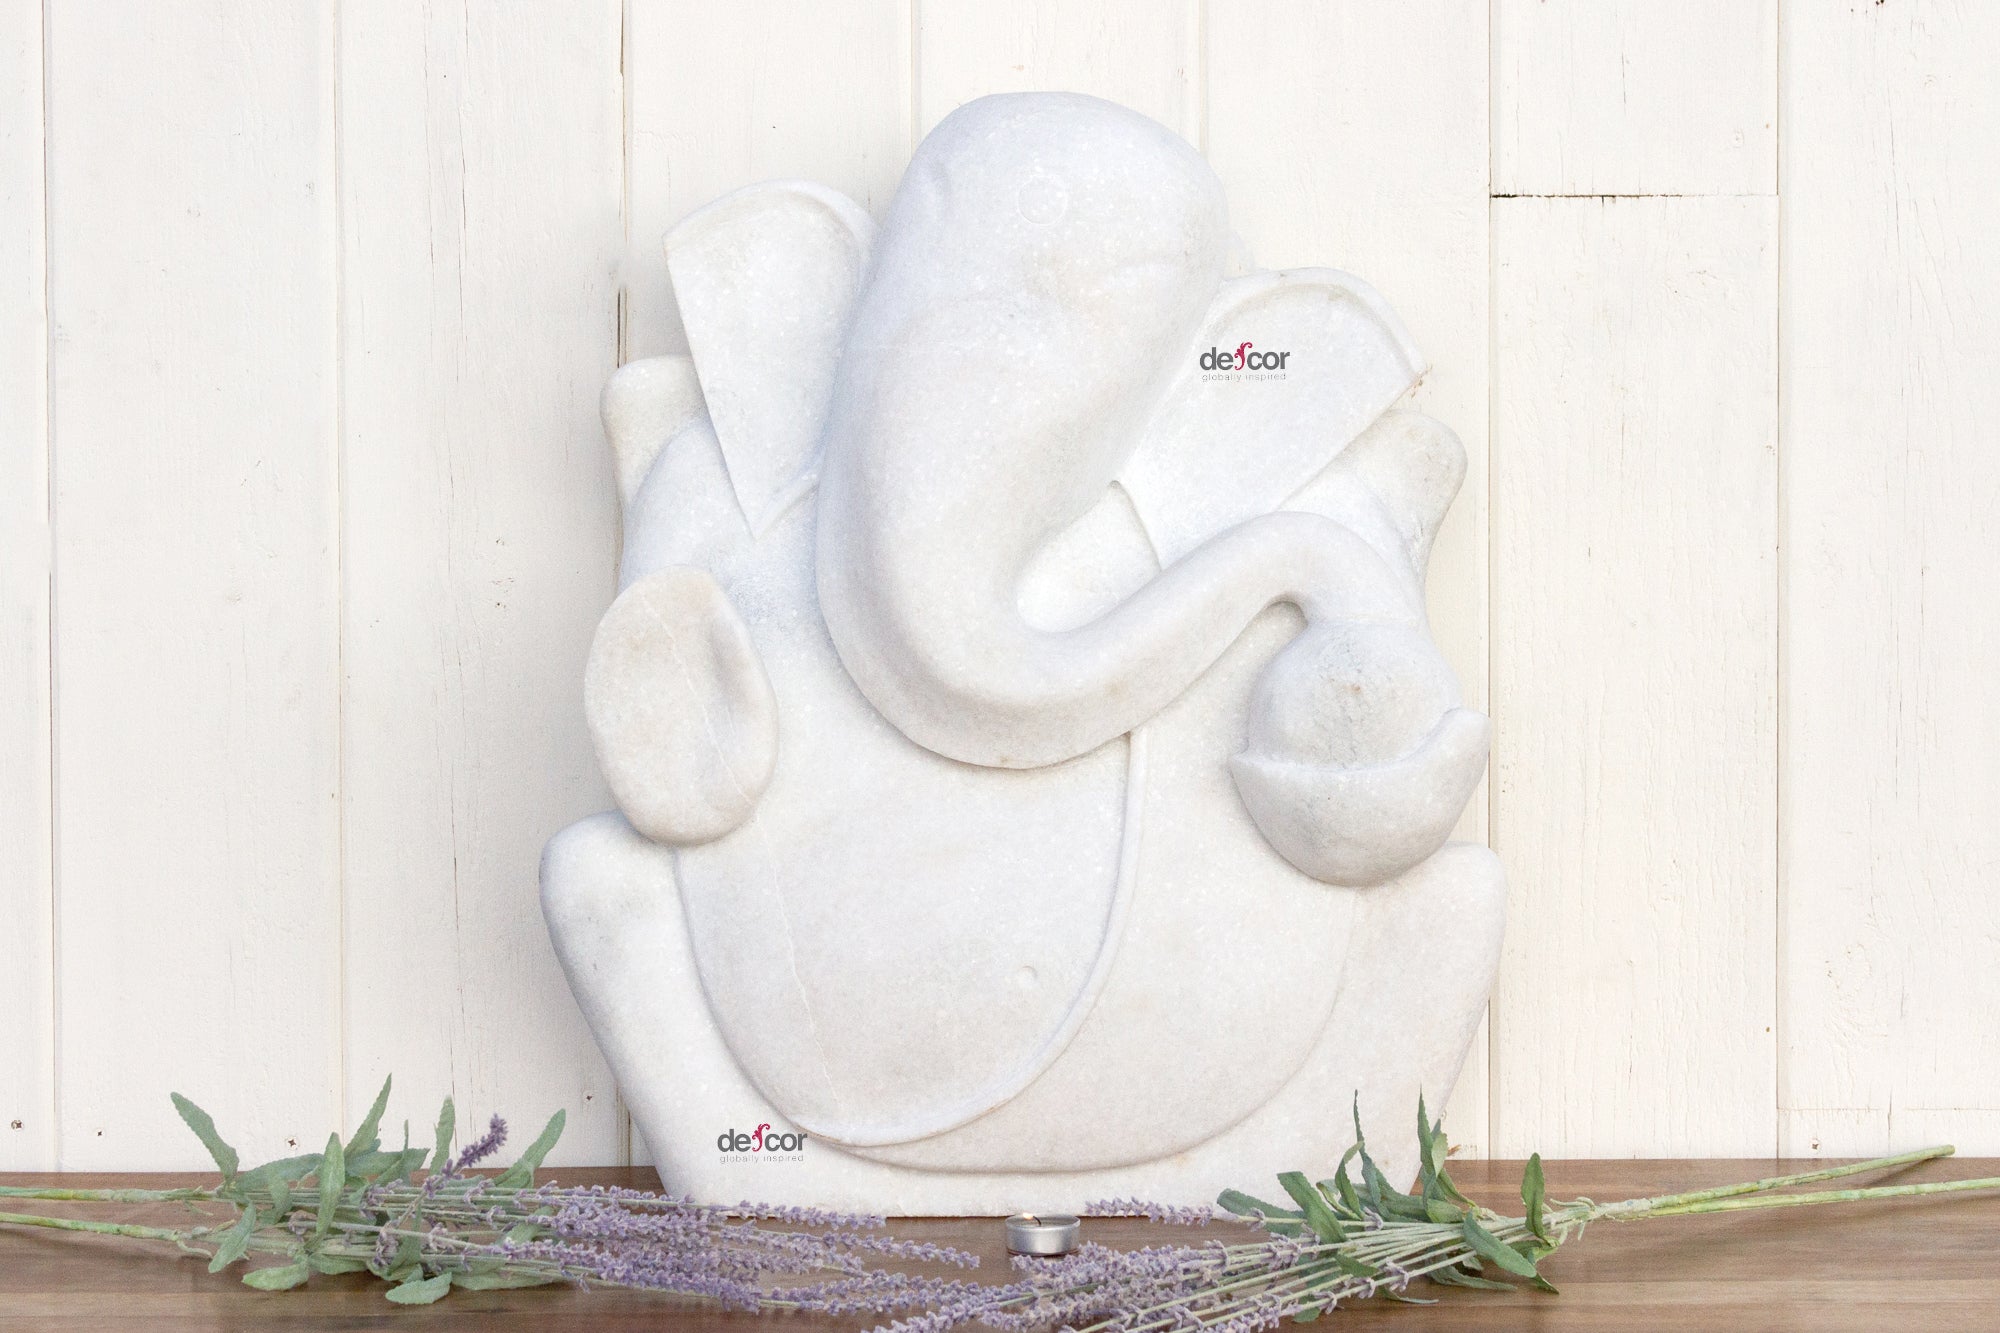 DE-COR | Ispirazione globale, Ganesha moderno in marmo intagliato a mano (commercio)